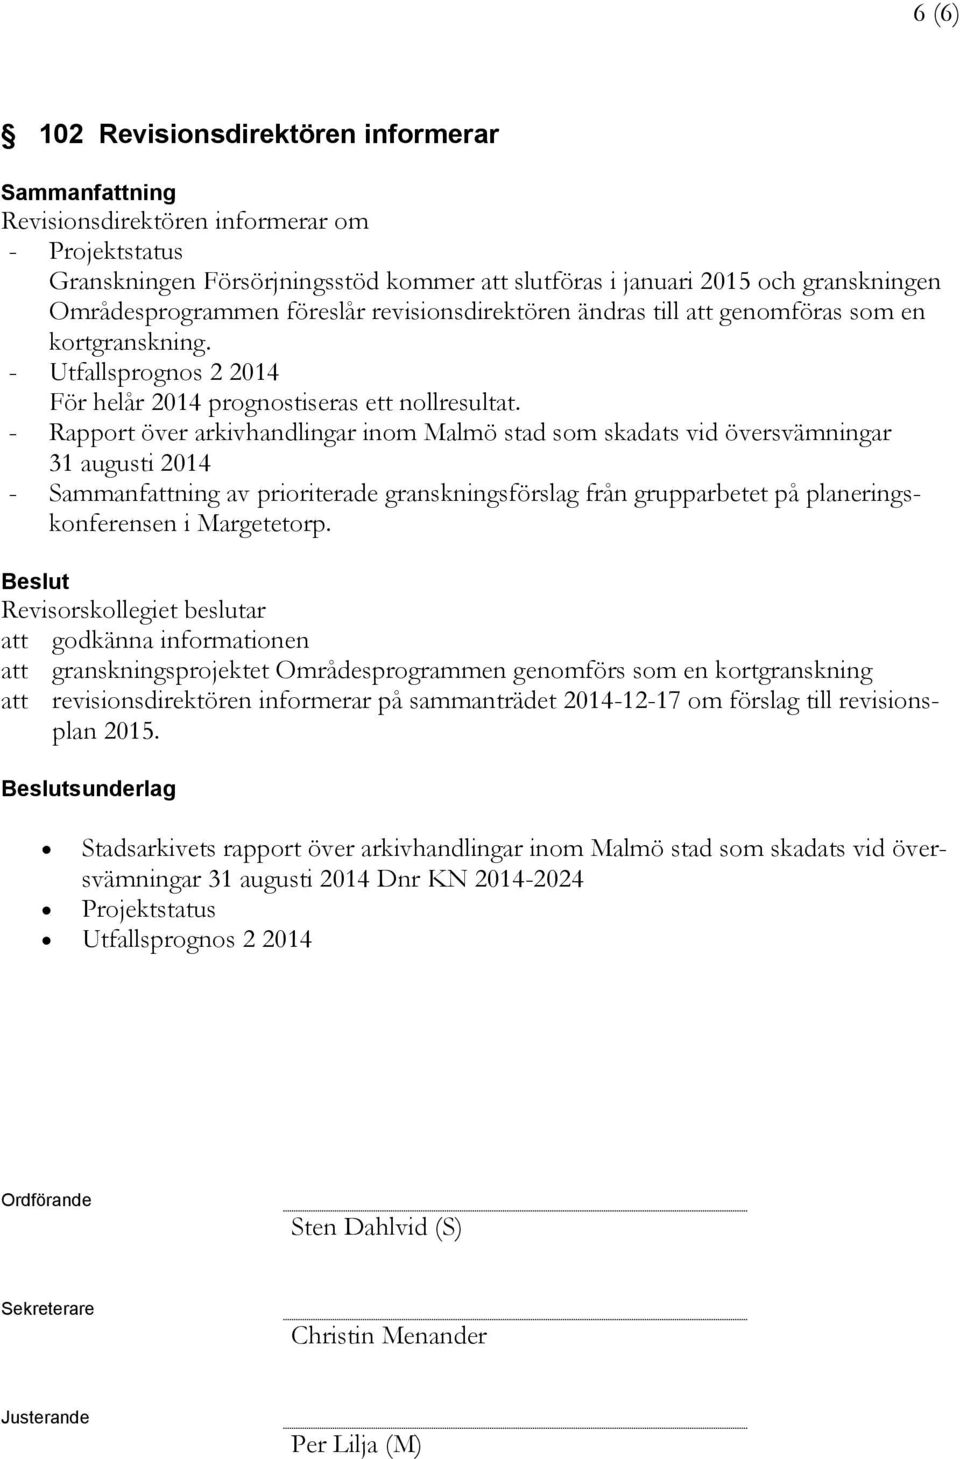 - Rapport över arkivhandlingar inom Malmö stad som skadats vid översvämningar 31 augusti 2014 - av prioriterade granskningsförslag från grupparbetet på planeringskonferensen i Margetetorp.